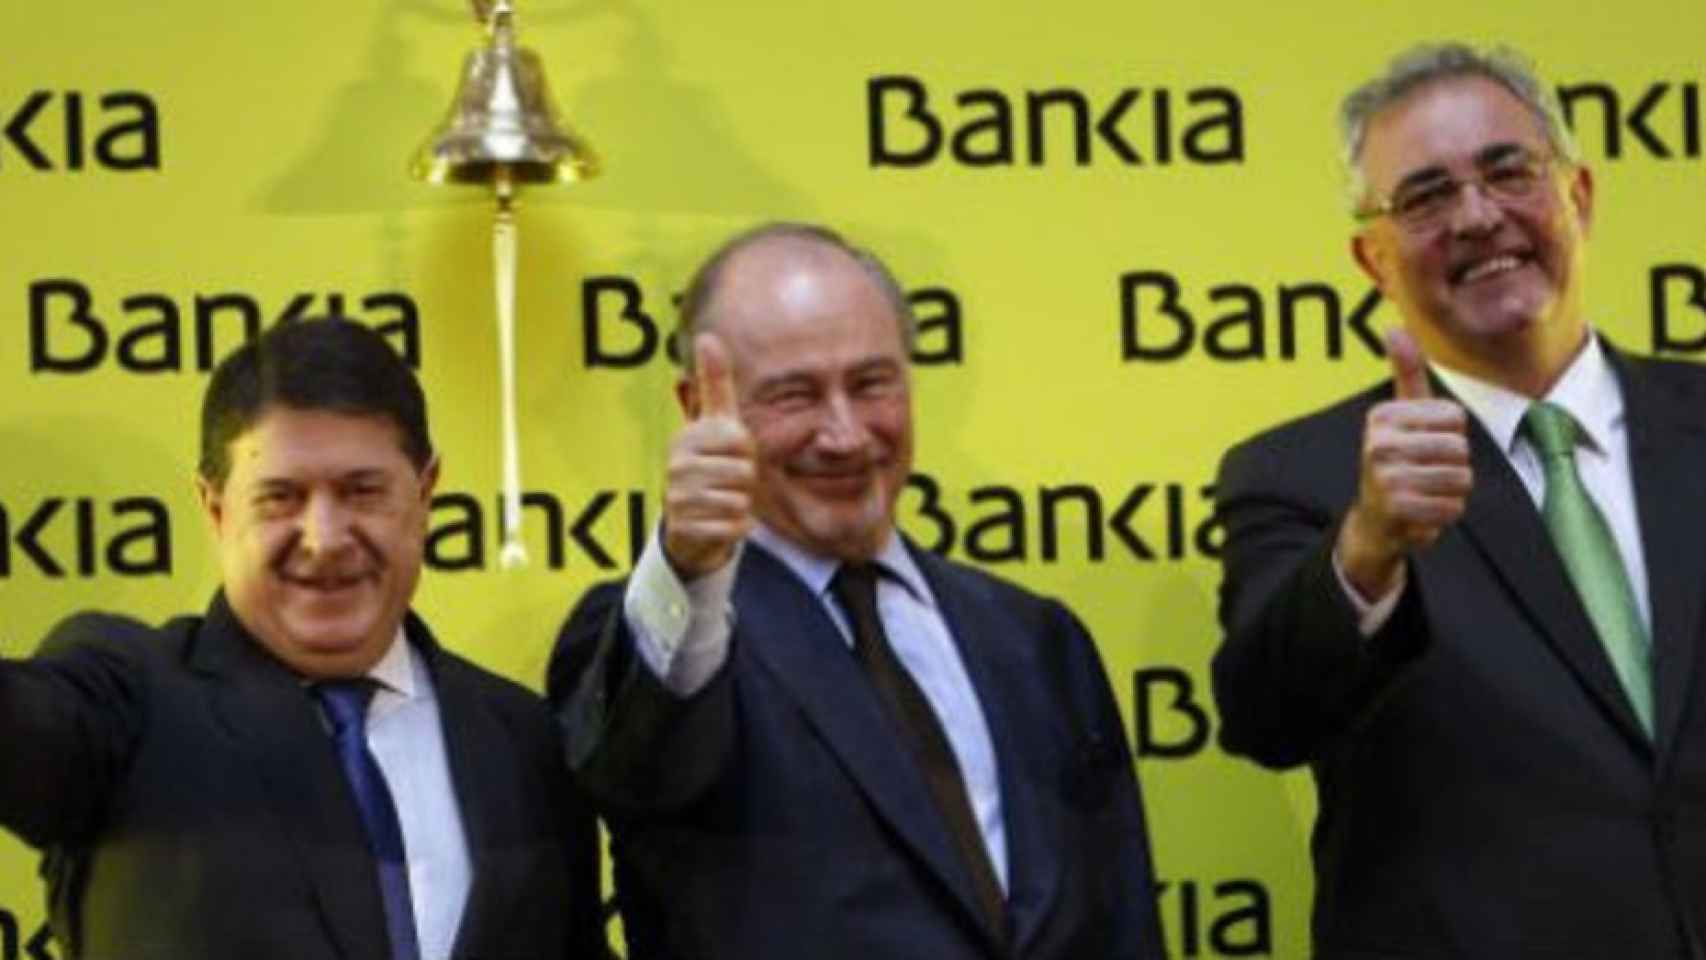 El juez Andreu abre juicio a Rato y Olivas por la salida a bolsa de Bankia